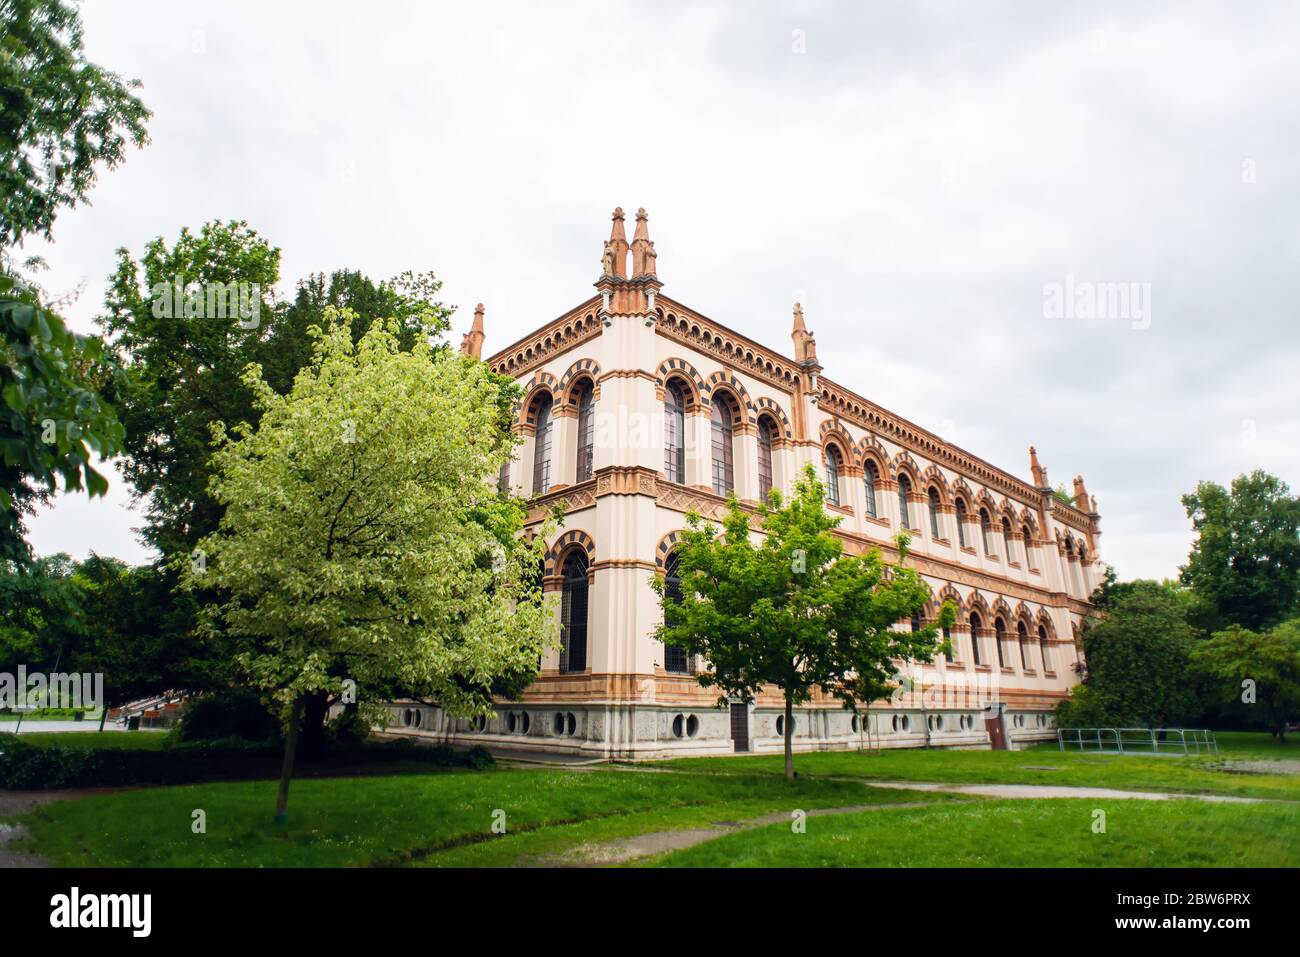 Milan. Italy - May 20, 2019: Facade of Milan Natural History Museum. Museo Civico di Storia Naturale di Milano. Stock Photo